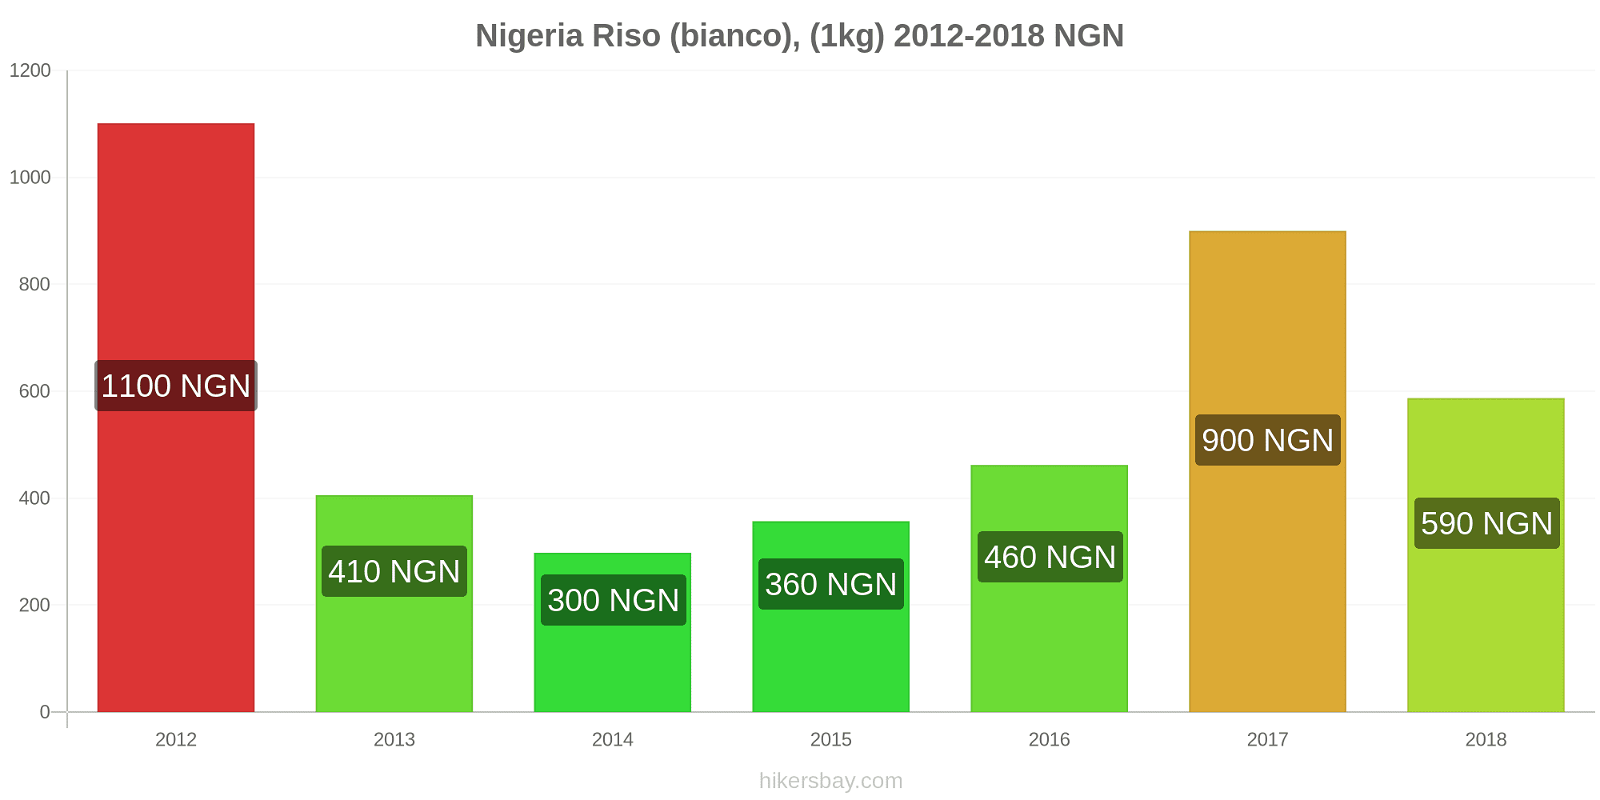 Nigeria cambi di prezzo Chilo di riso bianco hikersbay.com